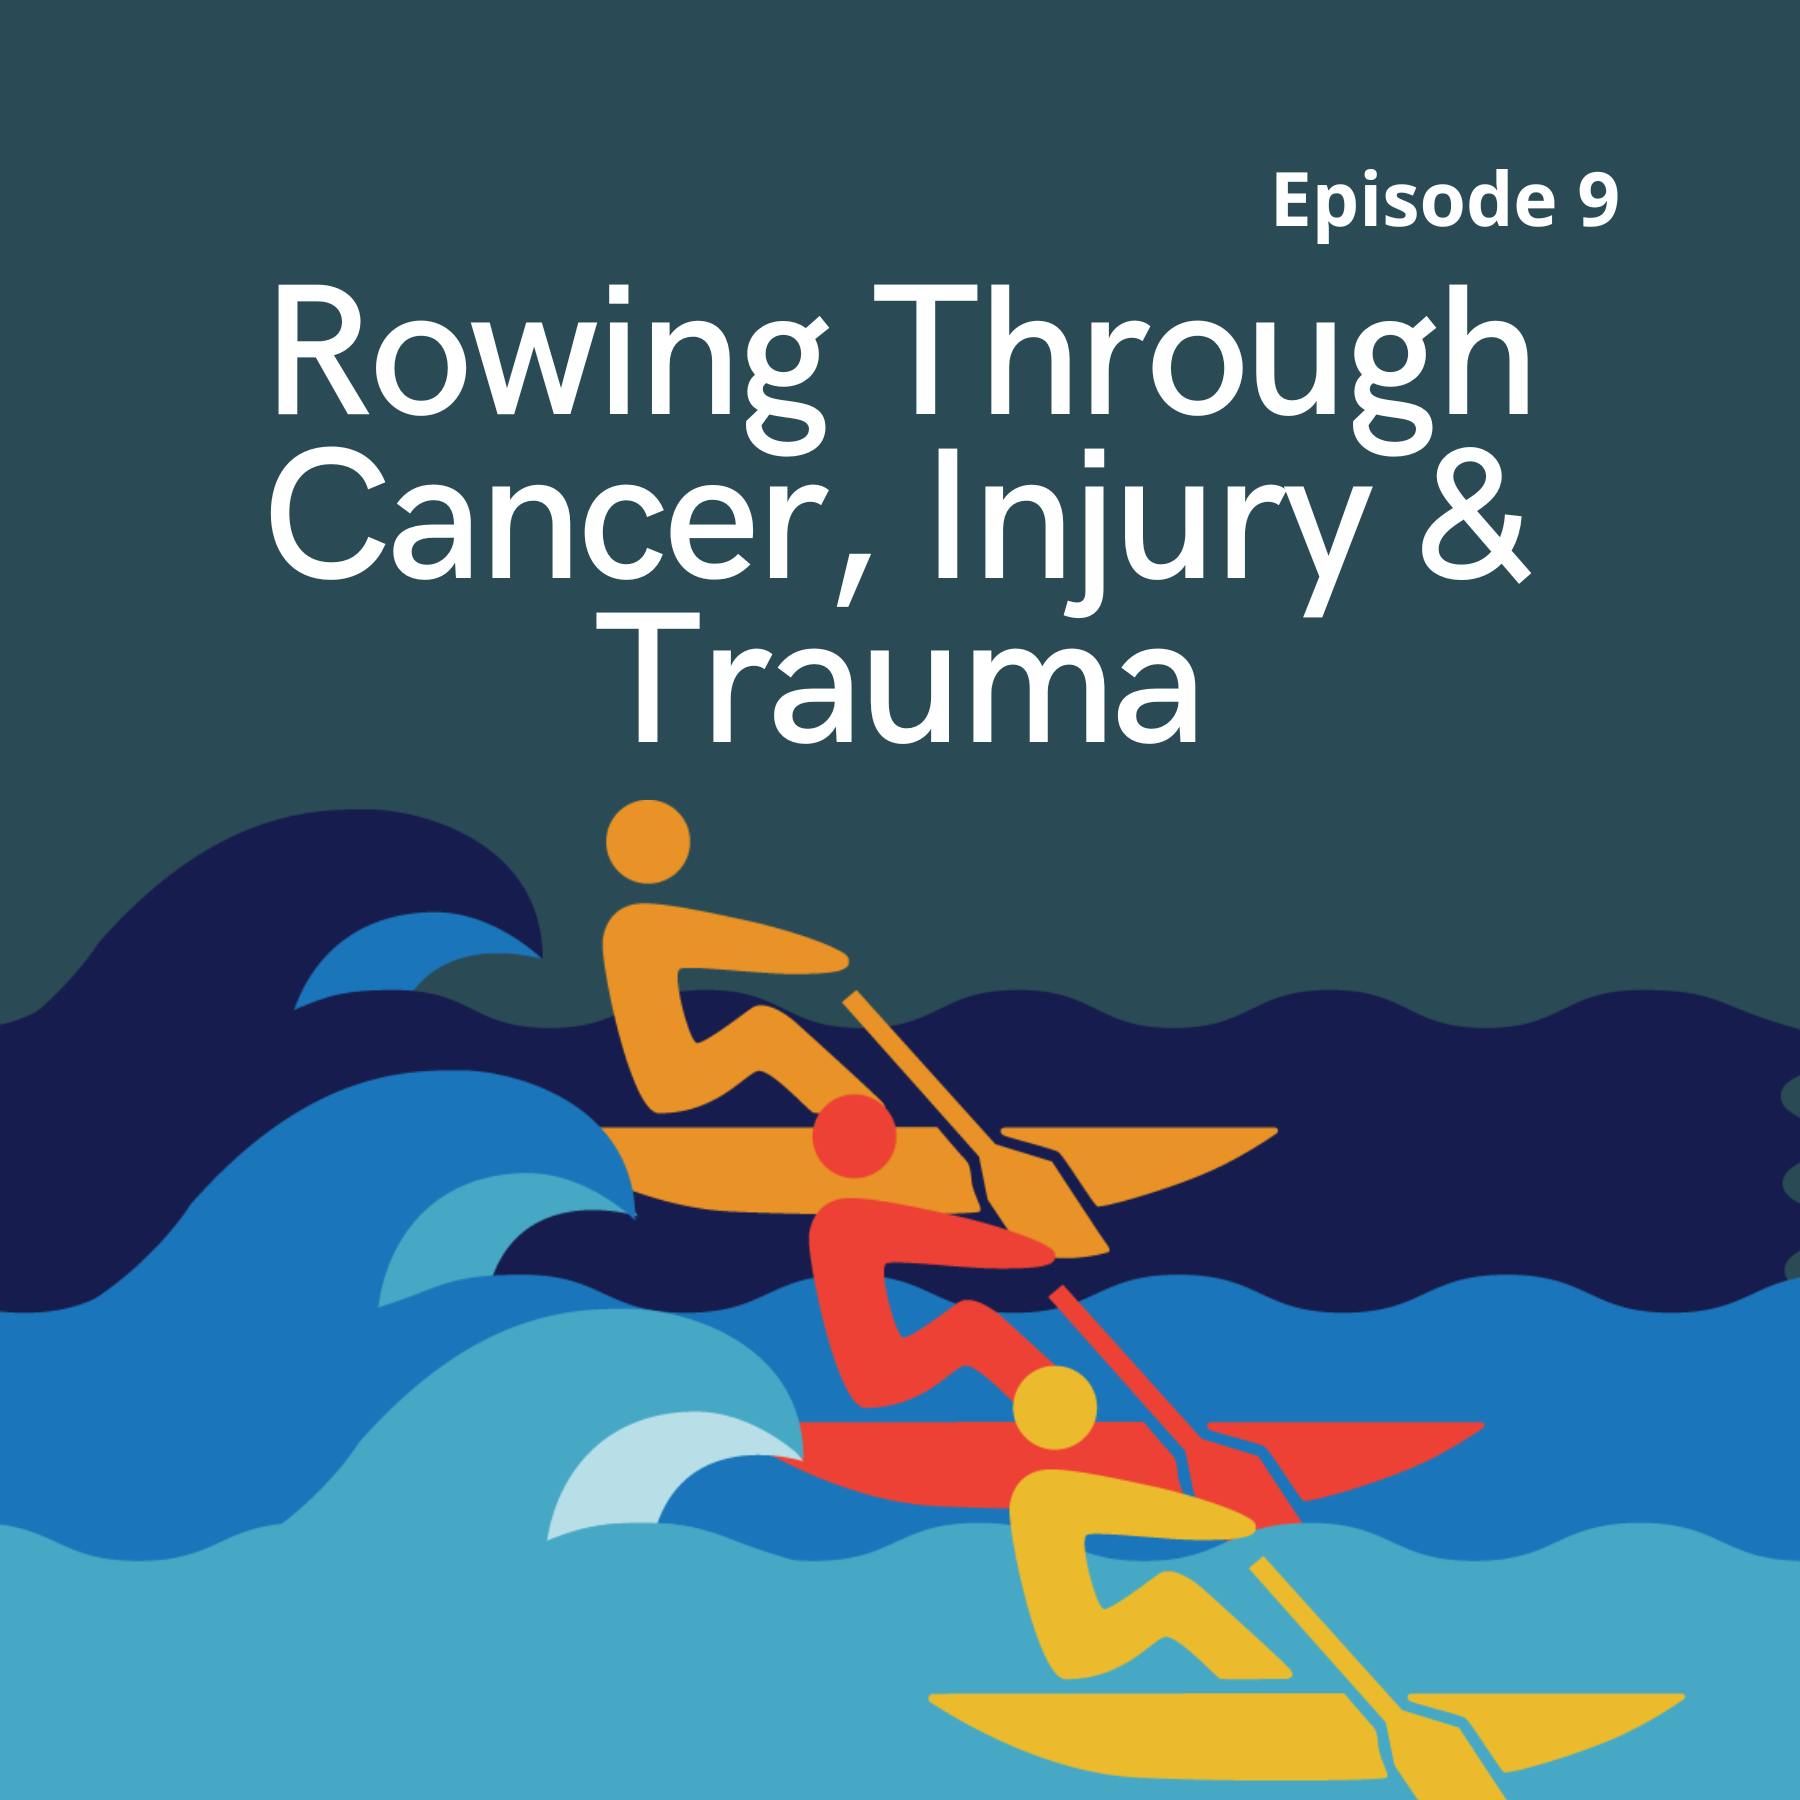 Rowing Through Cancer, Injury & Trauma: Three Body Odysseys at 2022 Head of the Charles